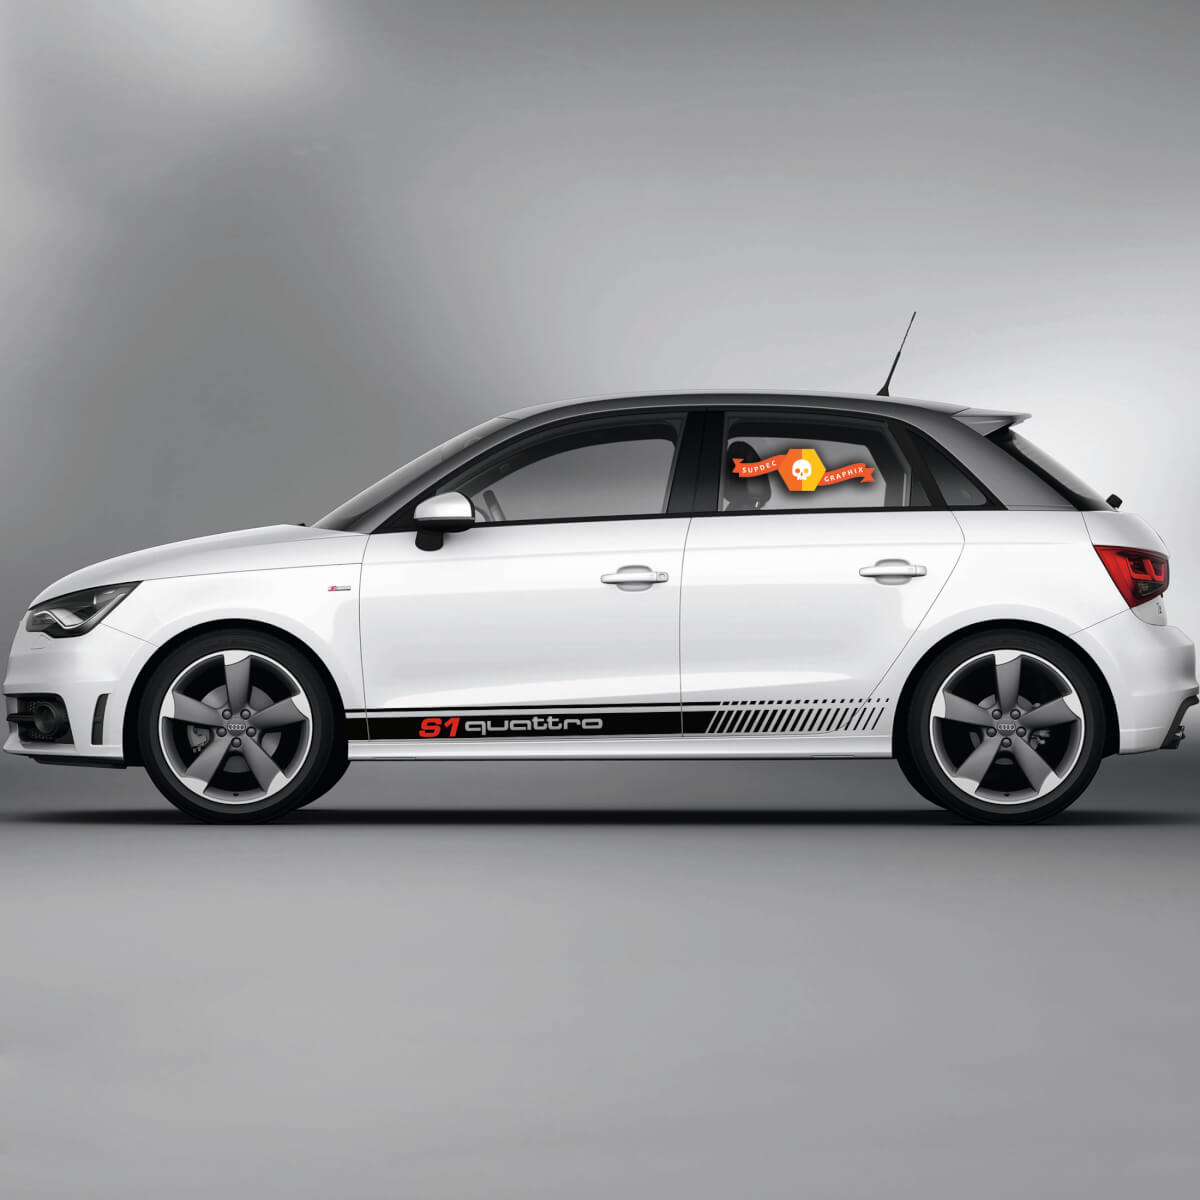 2x Decalcomanie in vinile Adesivi grafici Audi A1 Rocker Panel S1 Quattro 2022